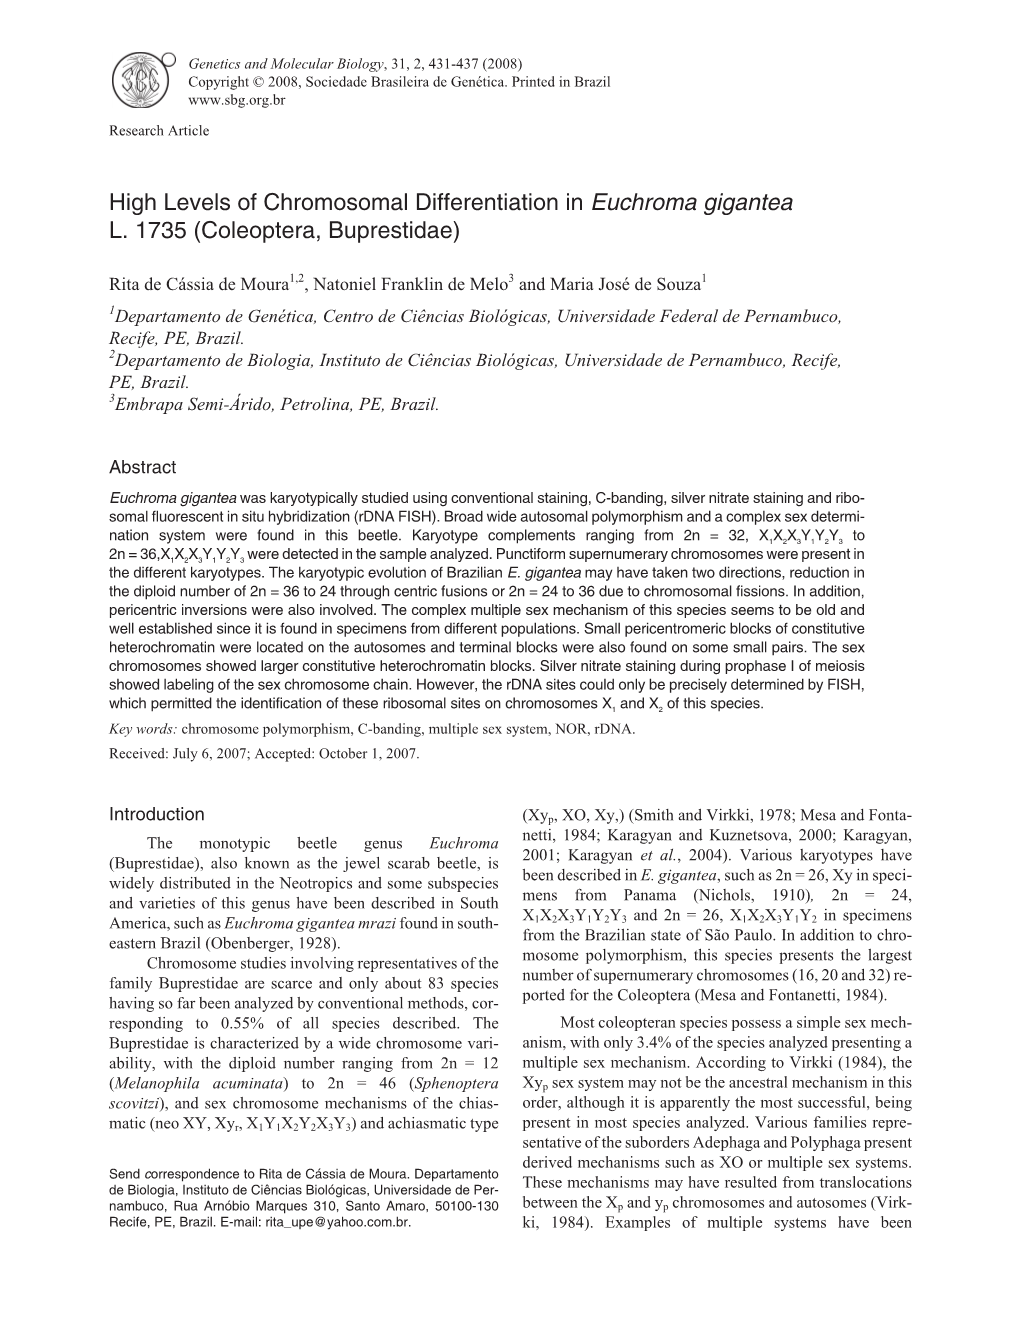 High Levels of Chromosomal Differentiation in Euchroma Gigantea L